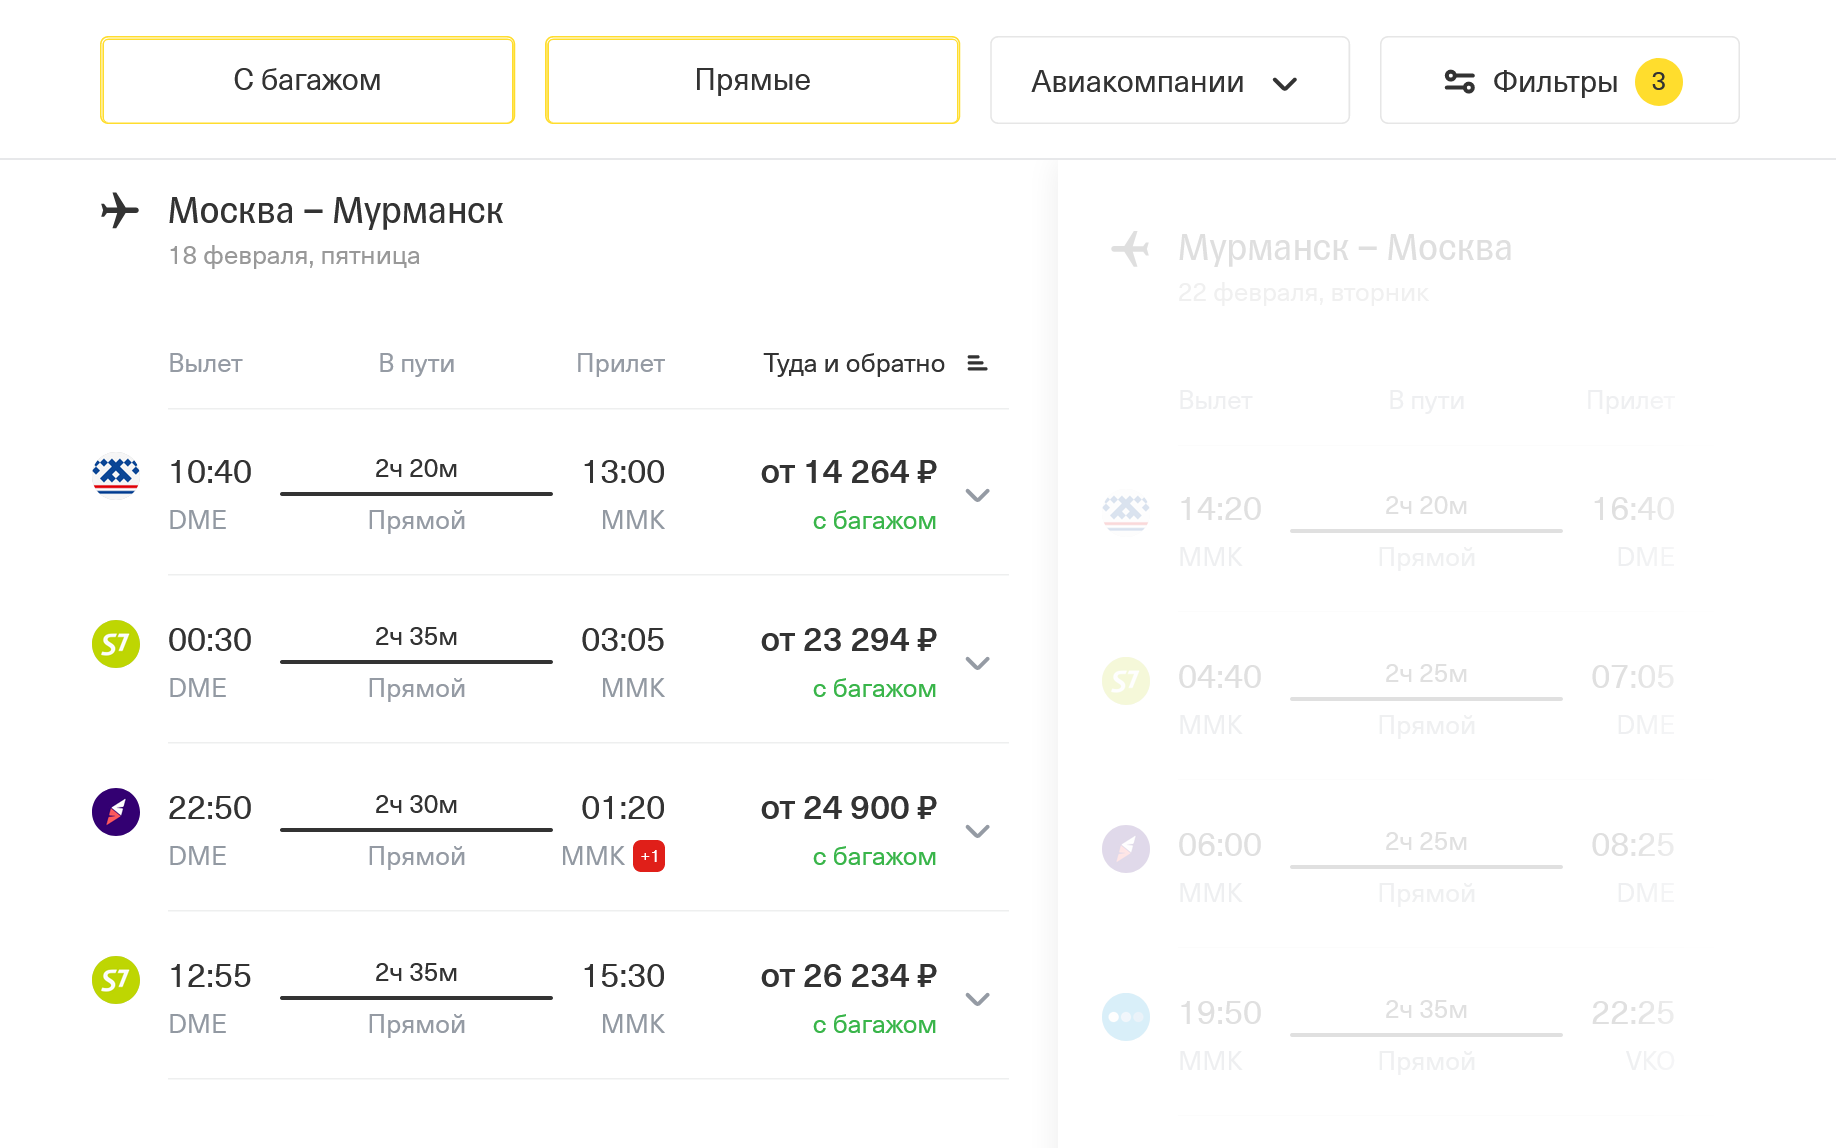 Стоимость перелета из Москвы в Мурманск и обратно на двоих варьируется от 14 264 до 35 648 ₽. Источник: tinkoff.ru